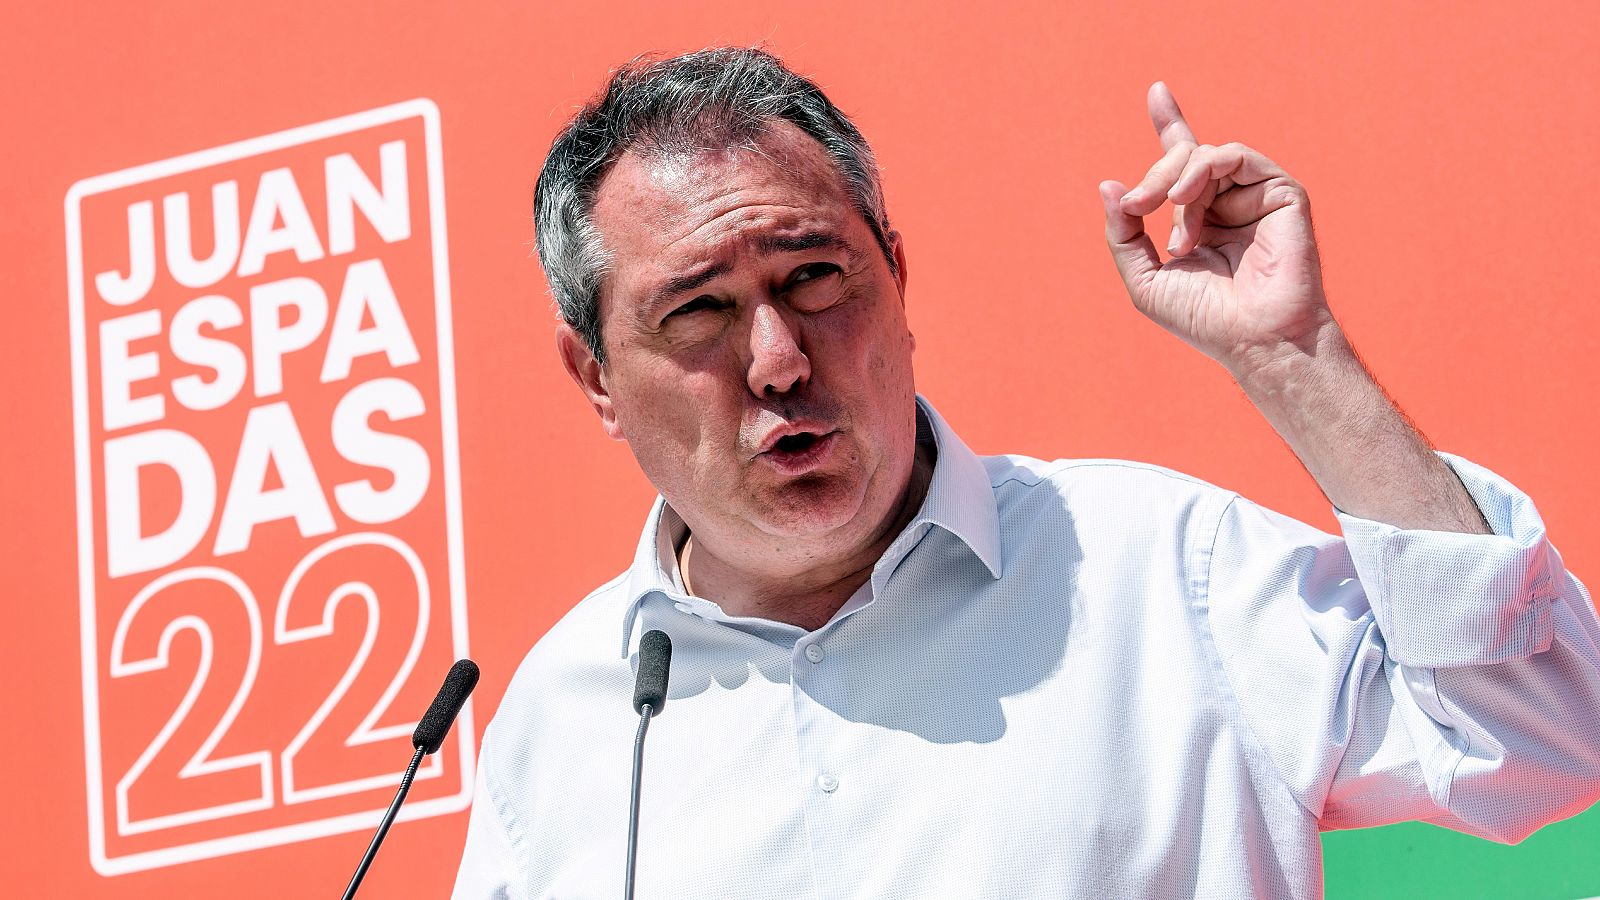 El candidato del PSOE a las elecciones del 19J en Andalucía, Juan Espadas